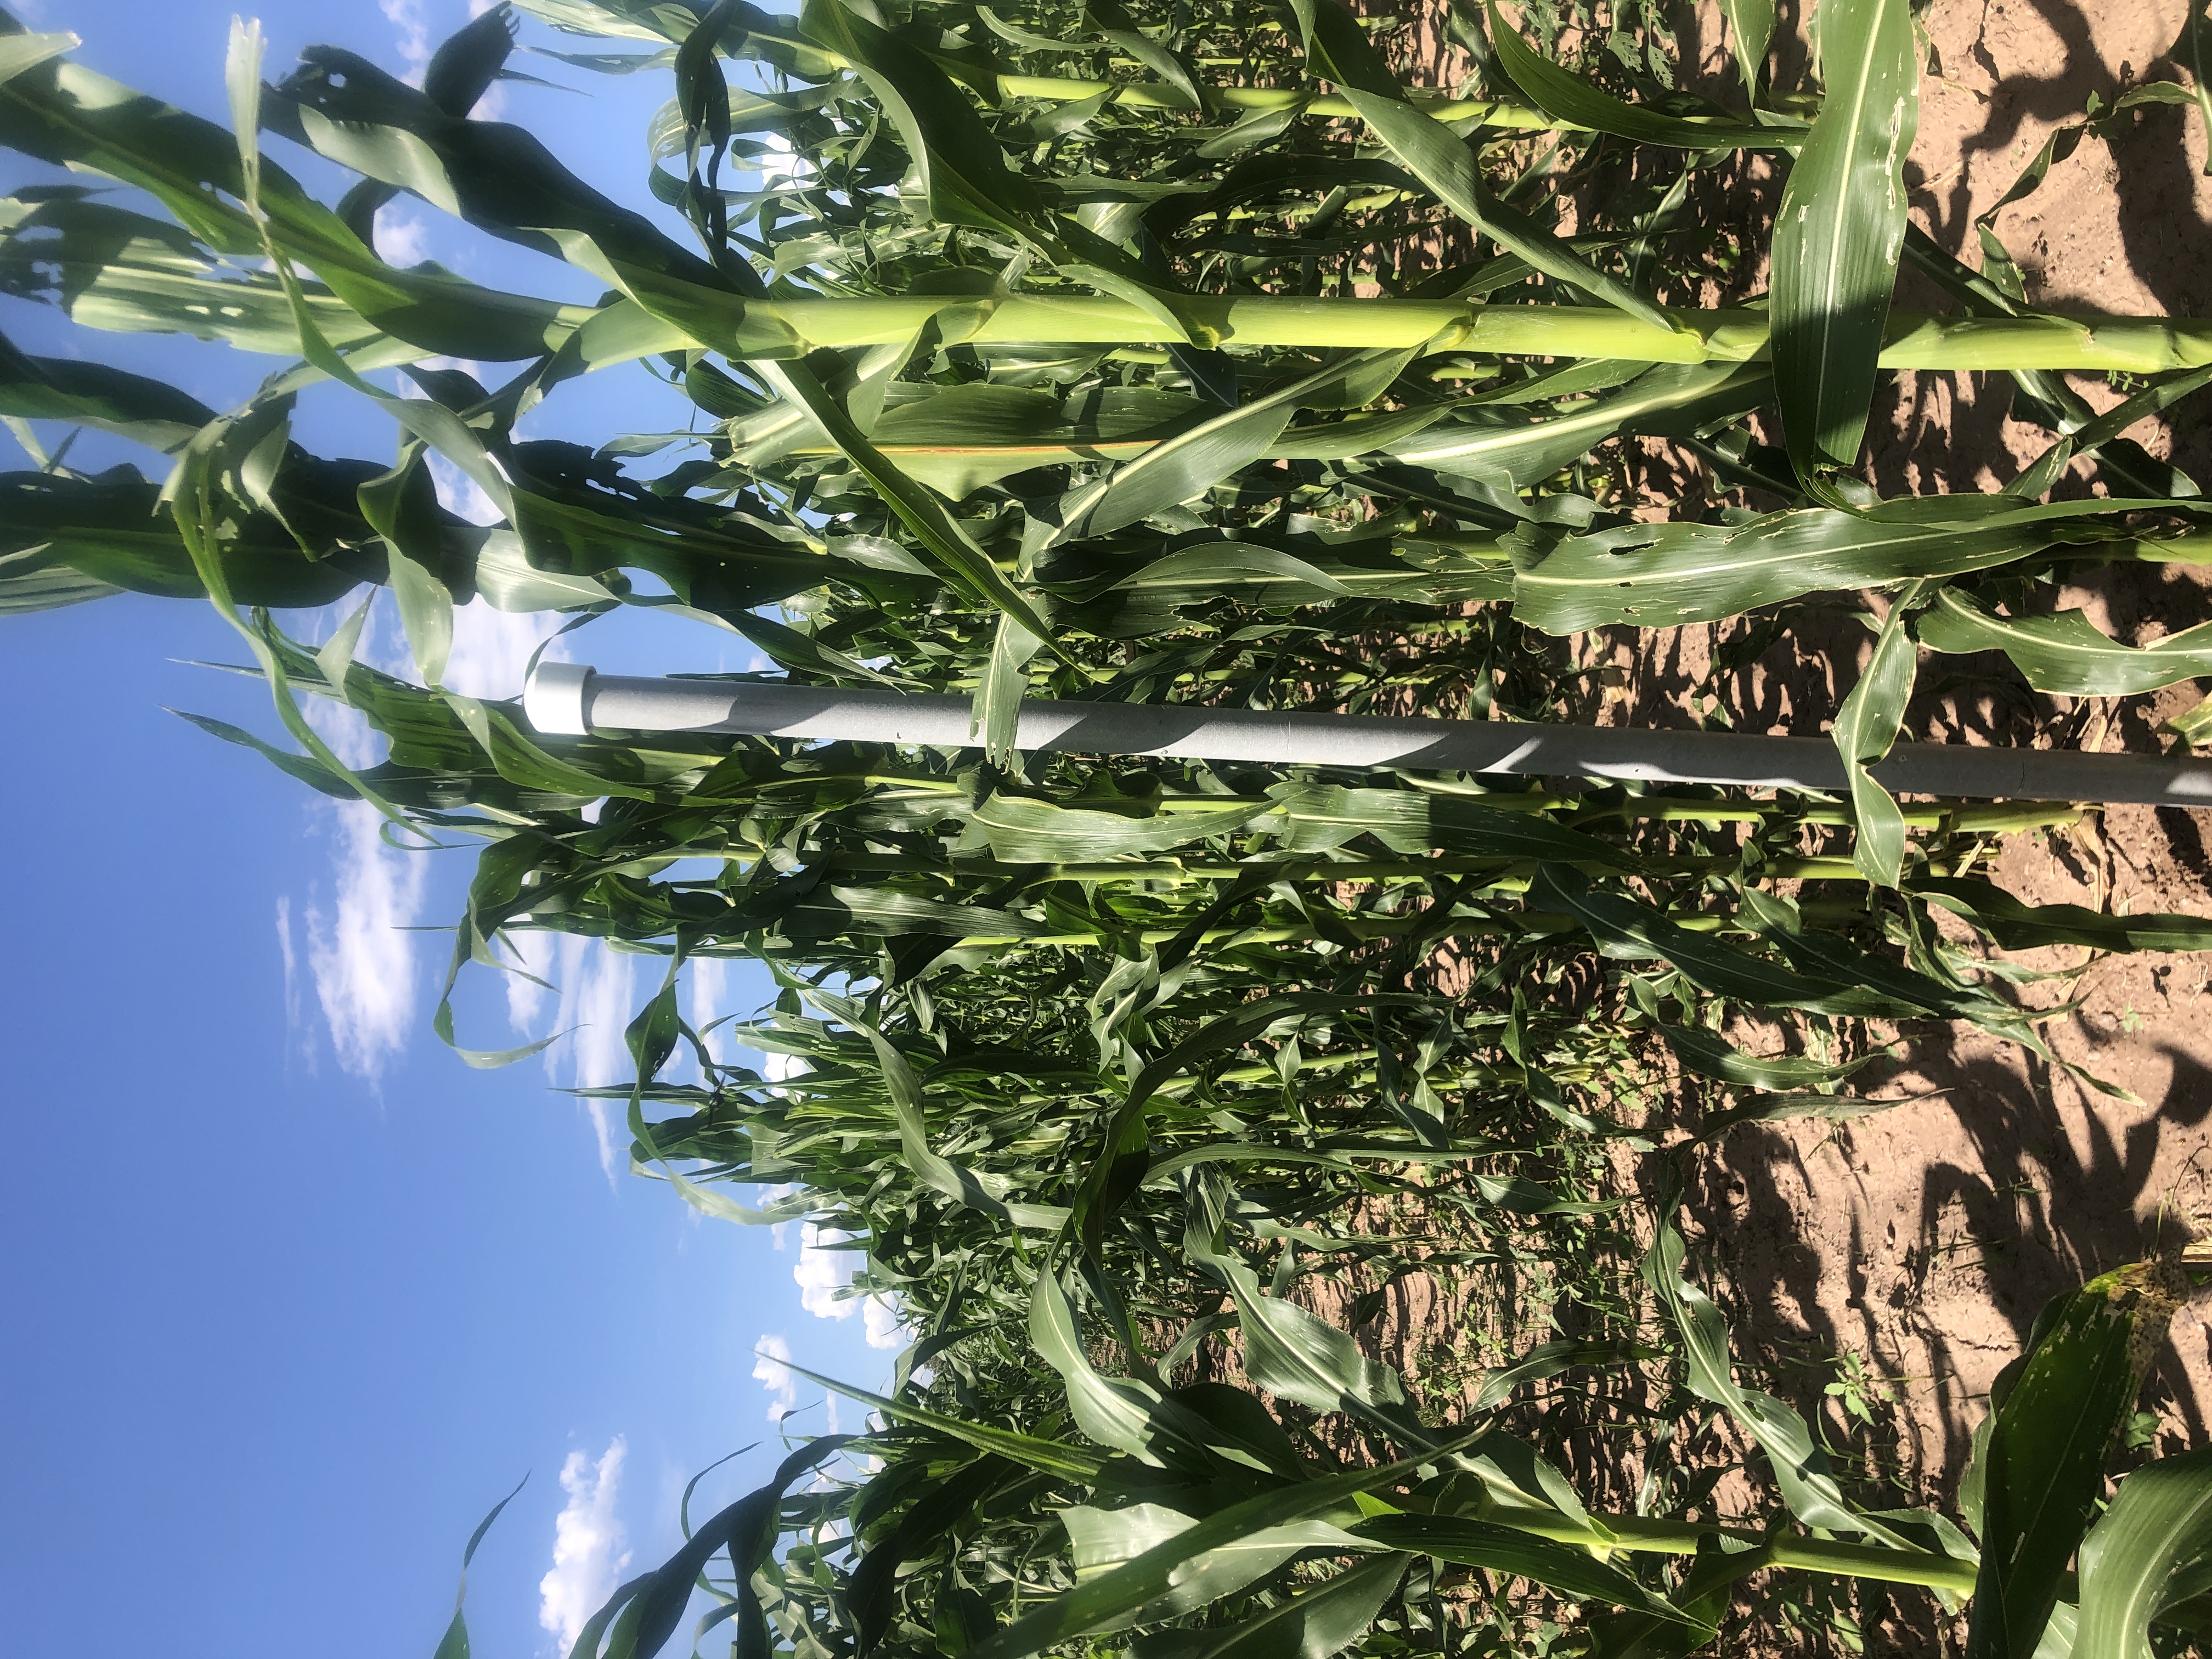 ASR in corn field